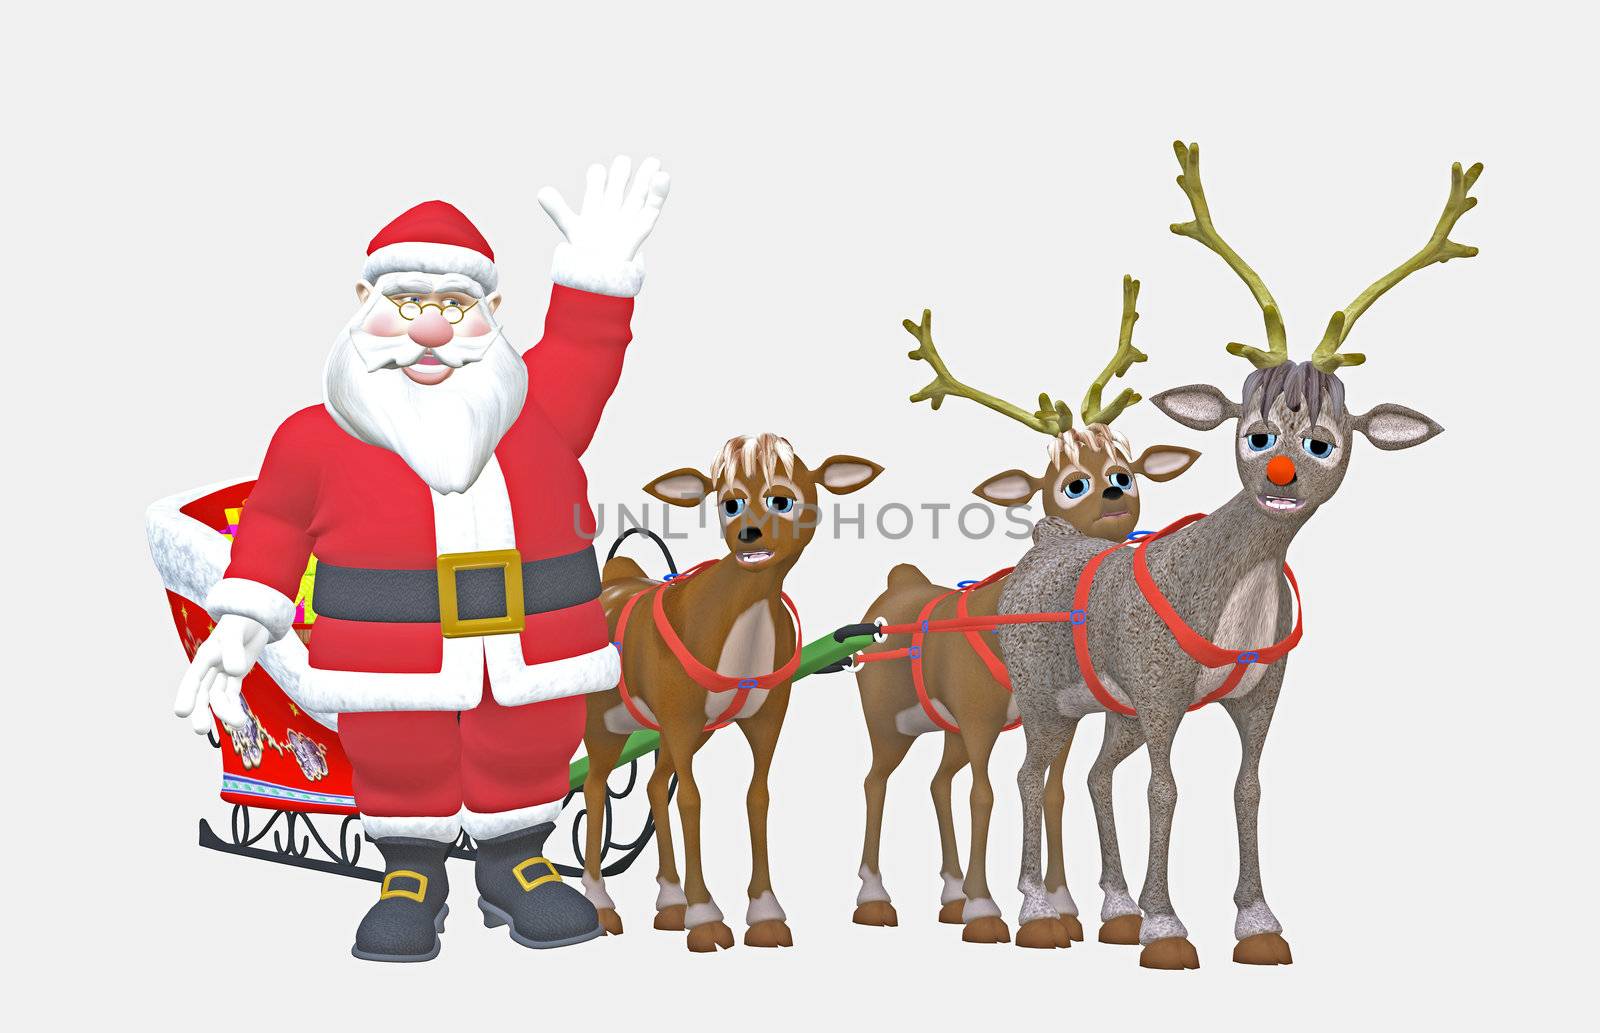 render of santa and reindeers